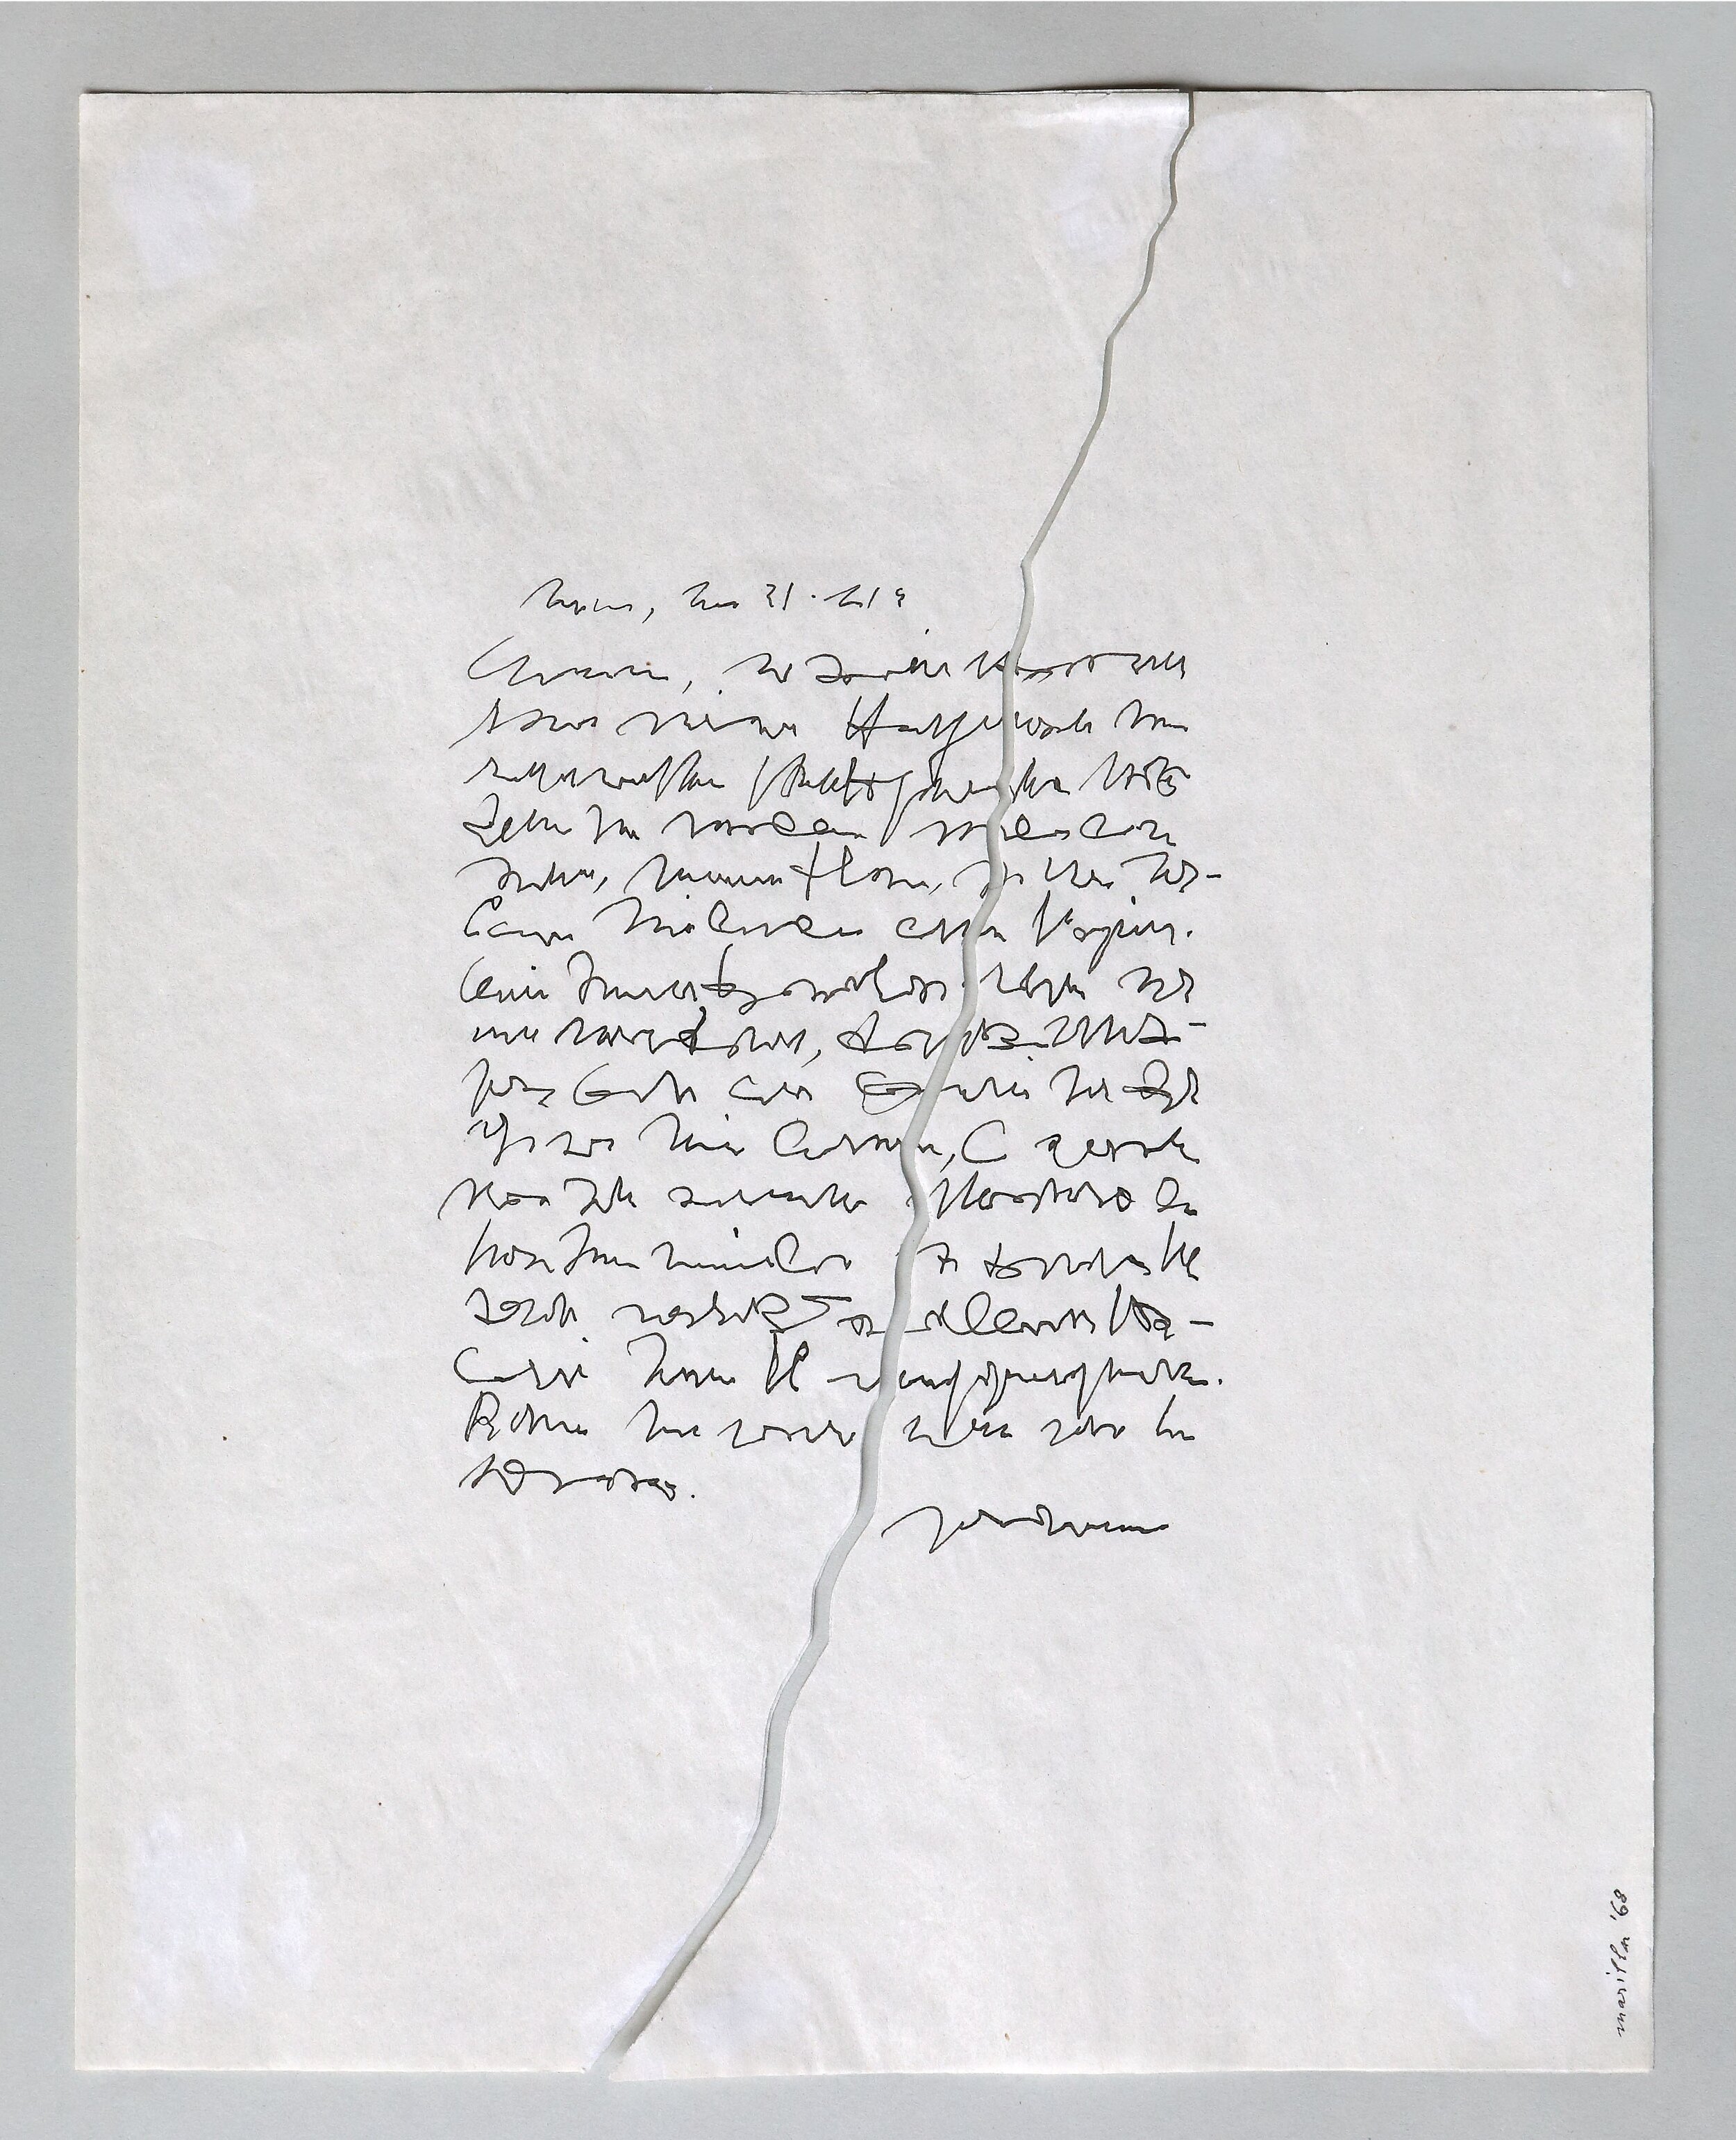 "Lettera incrinata", 1968